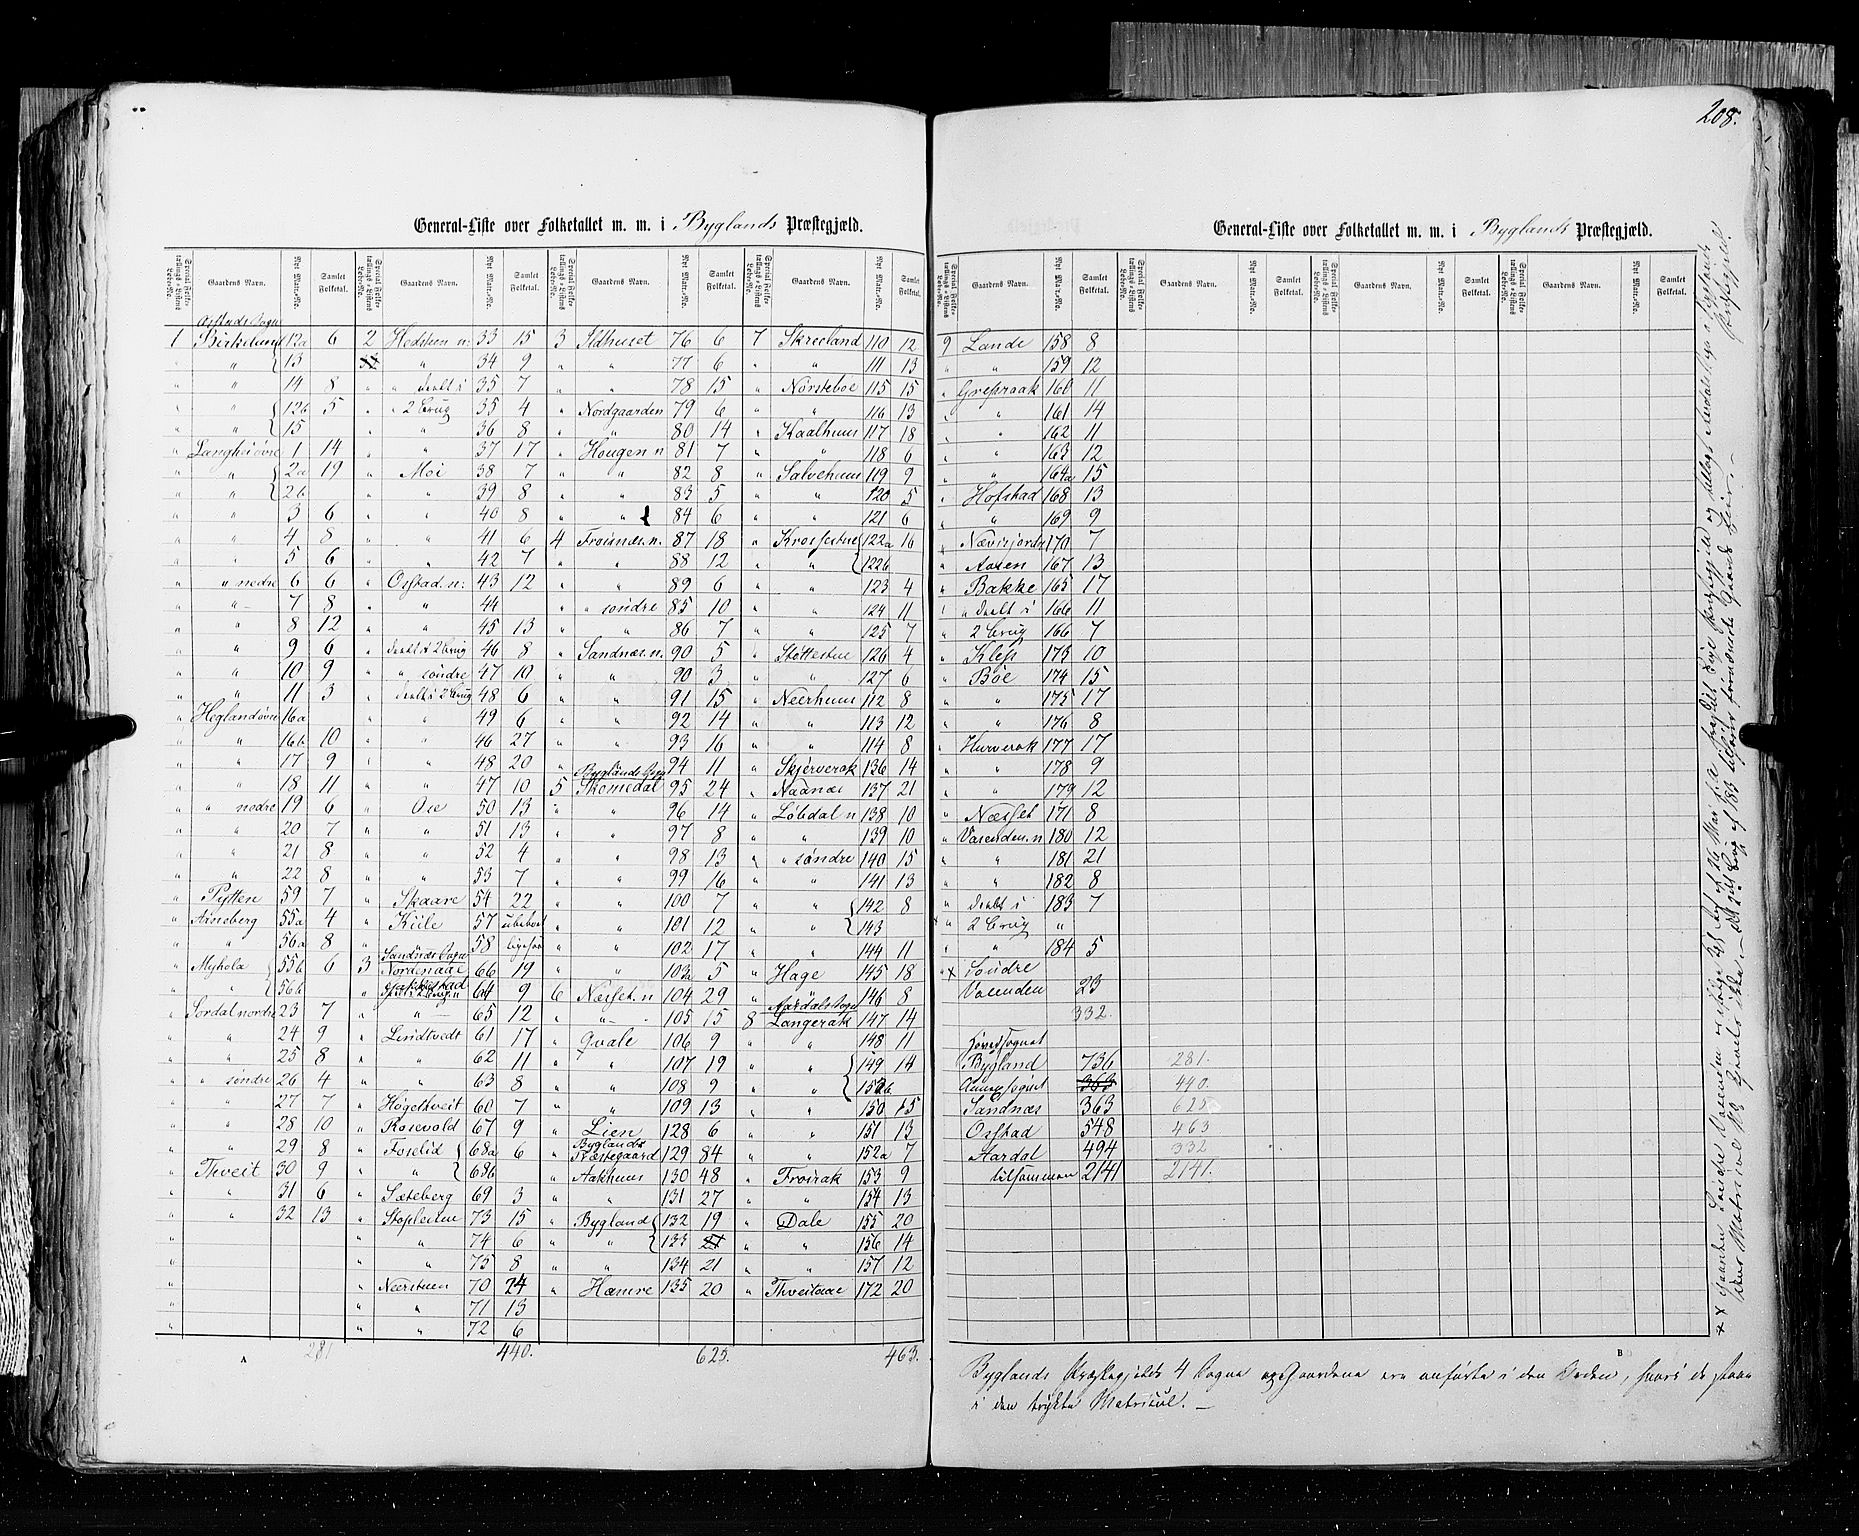 RA, Census 1855, vol. 3: Bratsberg amt, Nedenes amt og Lister og Mandal amt, 1855, p. 208